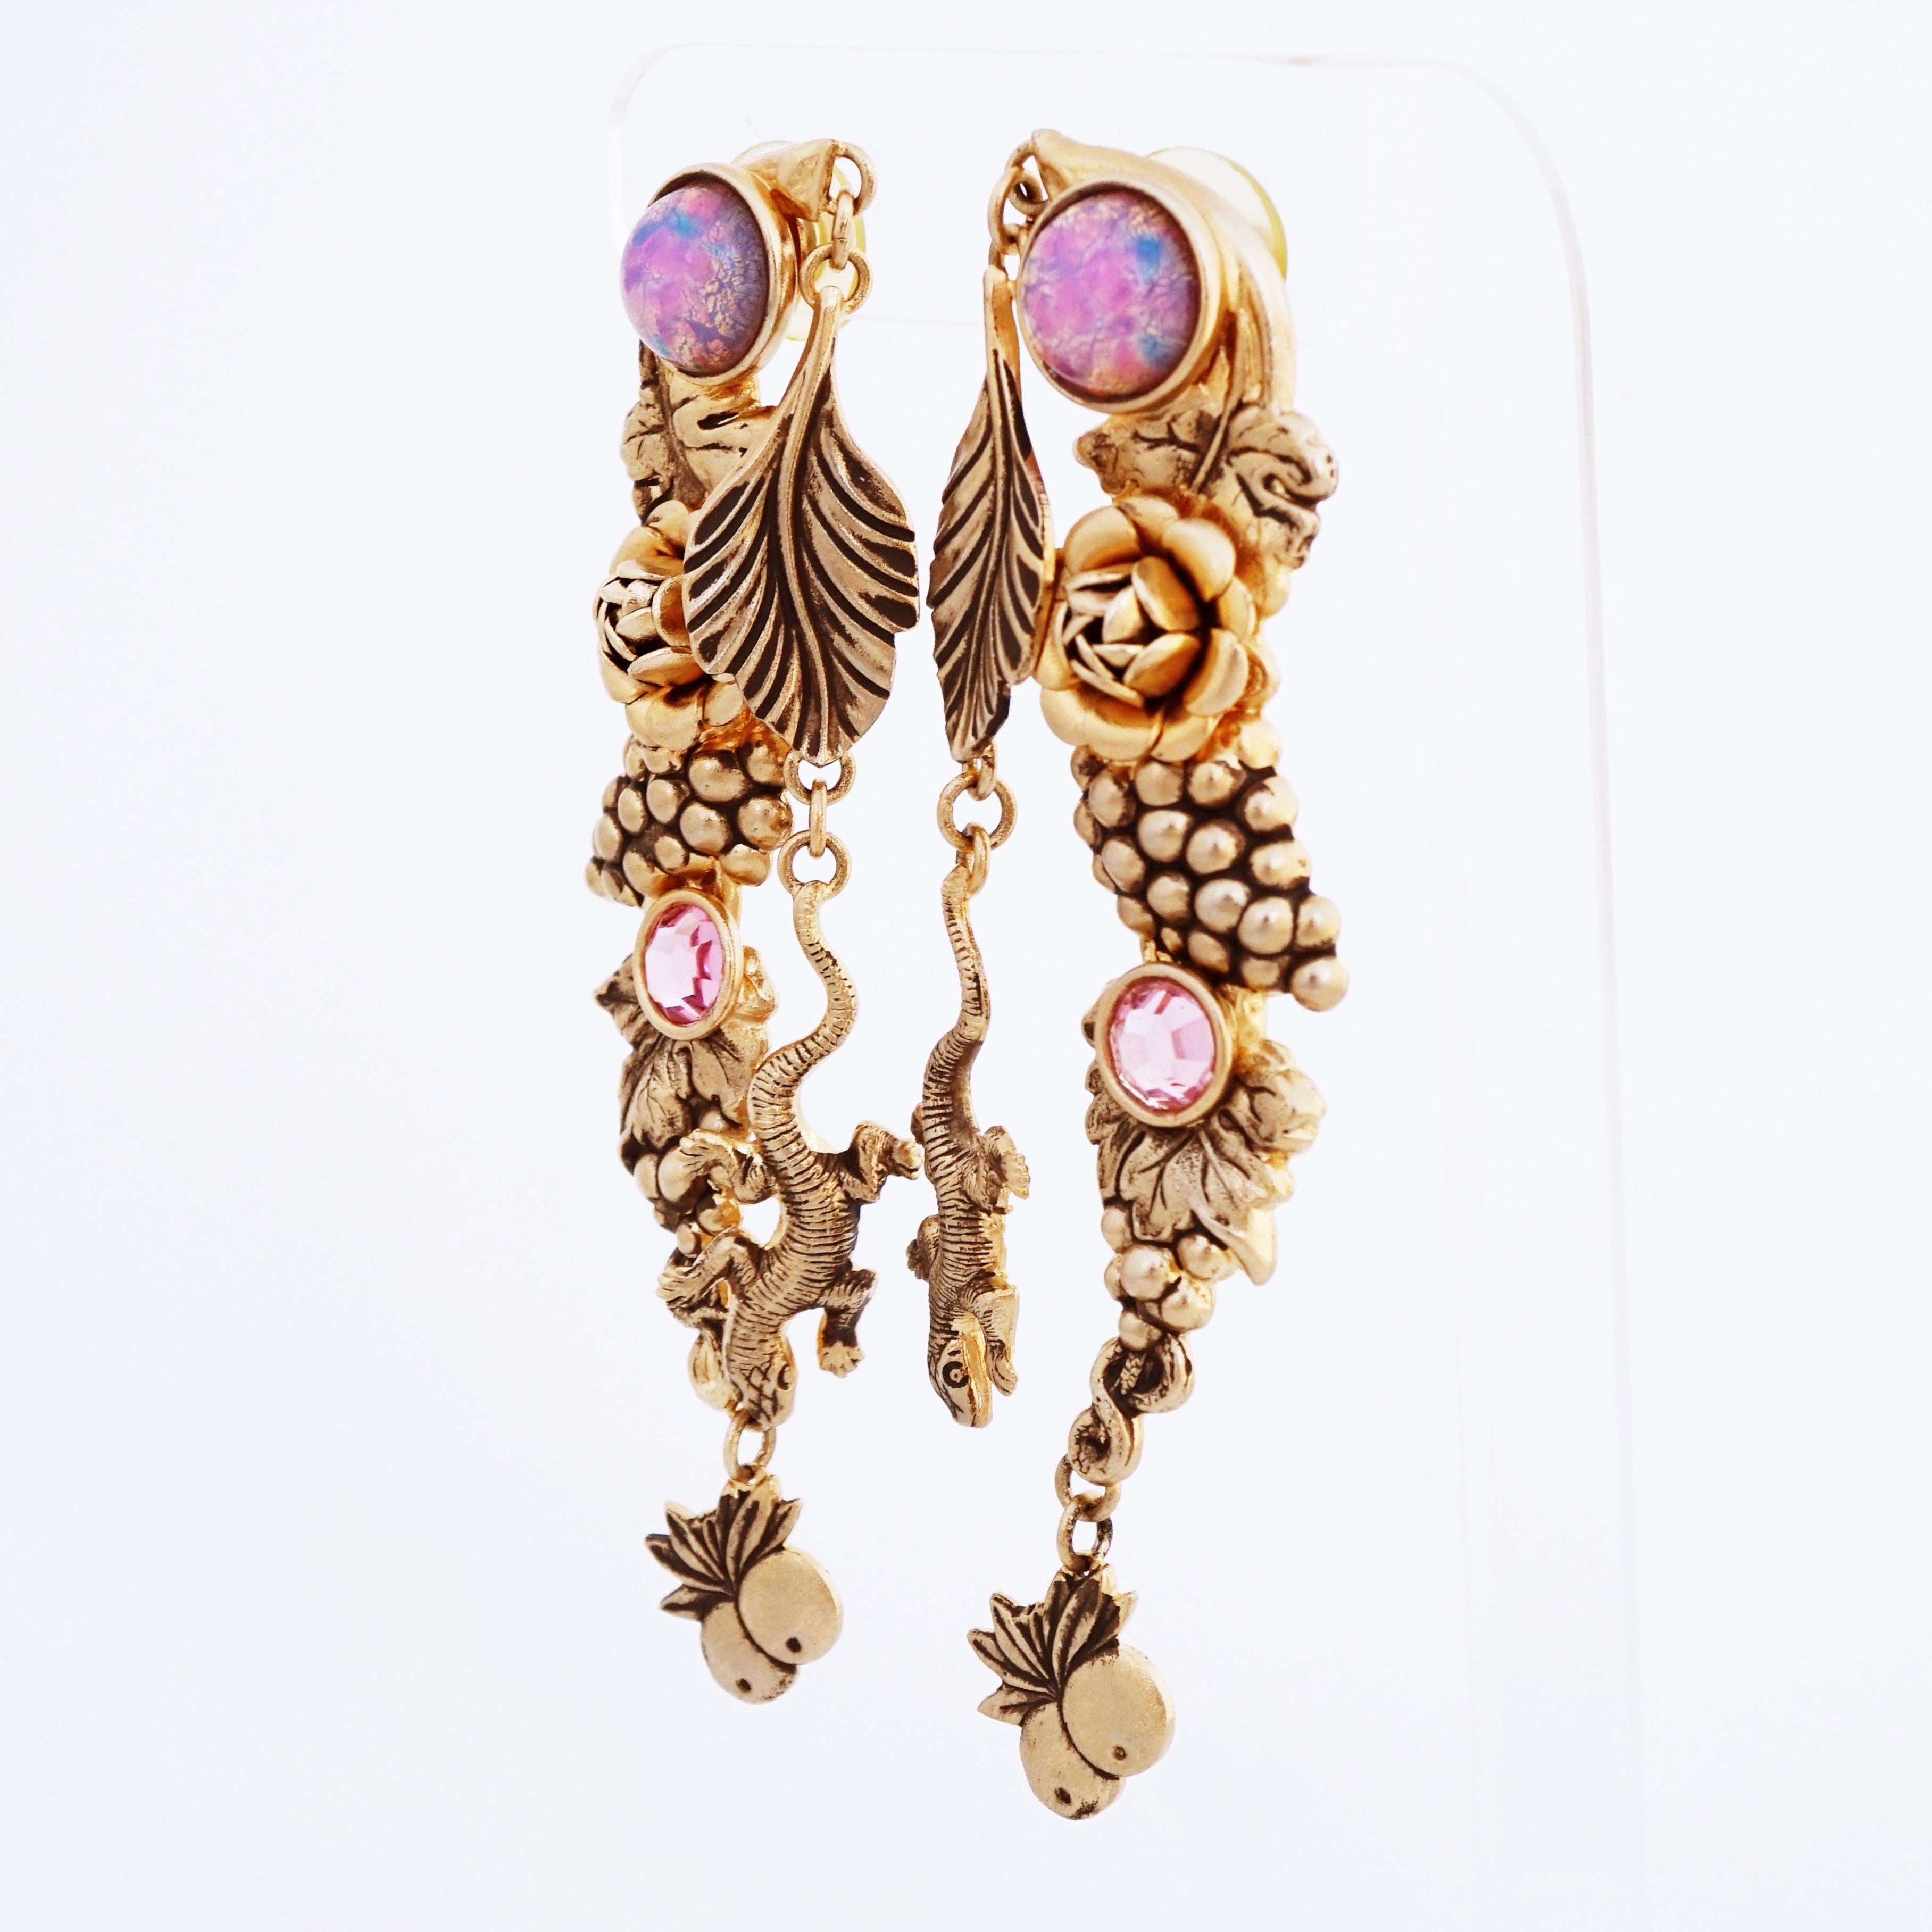 natasha stambouli earrings